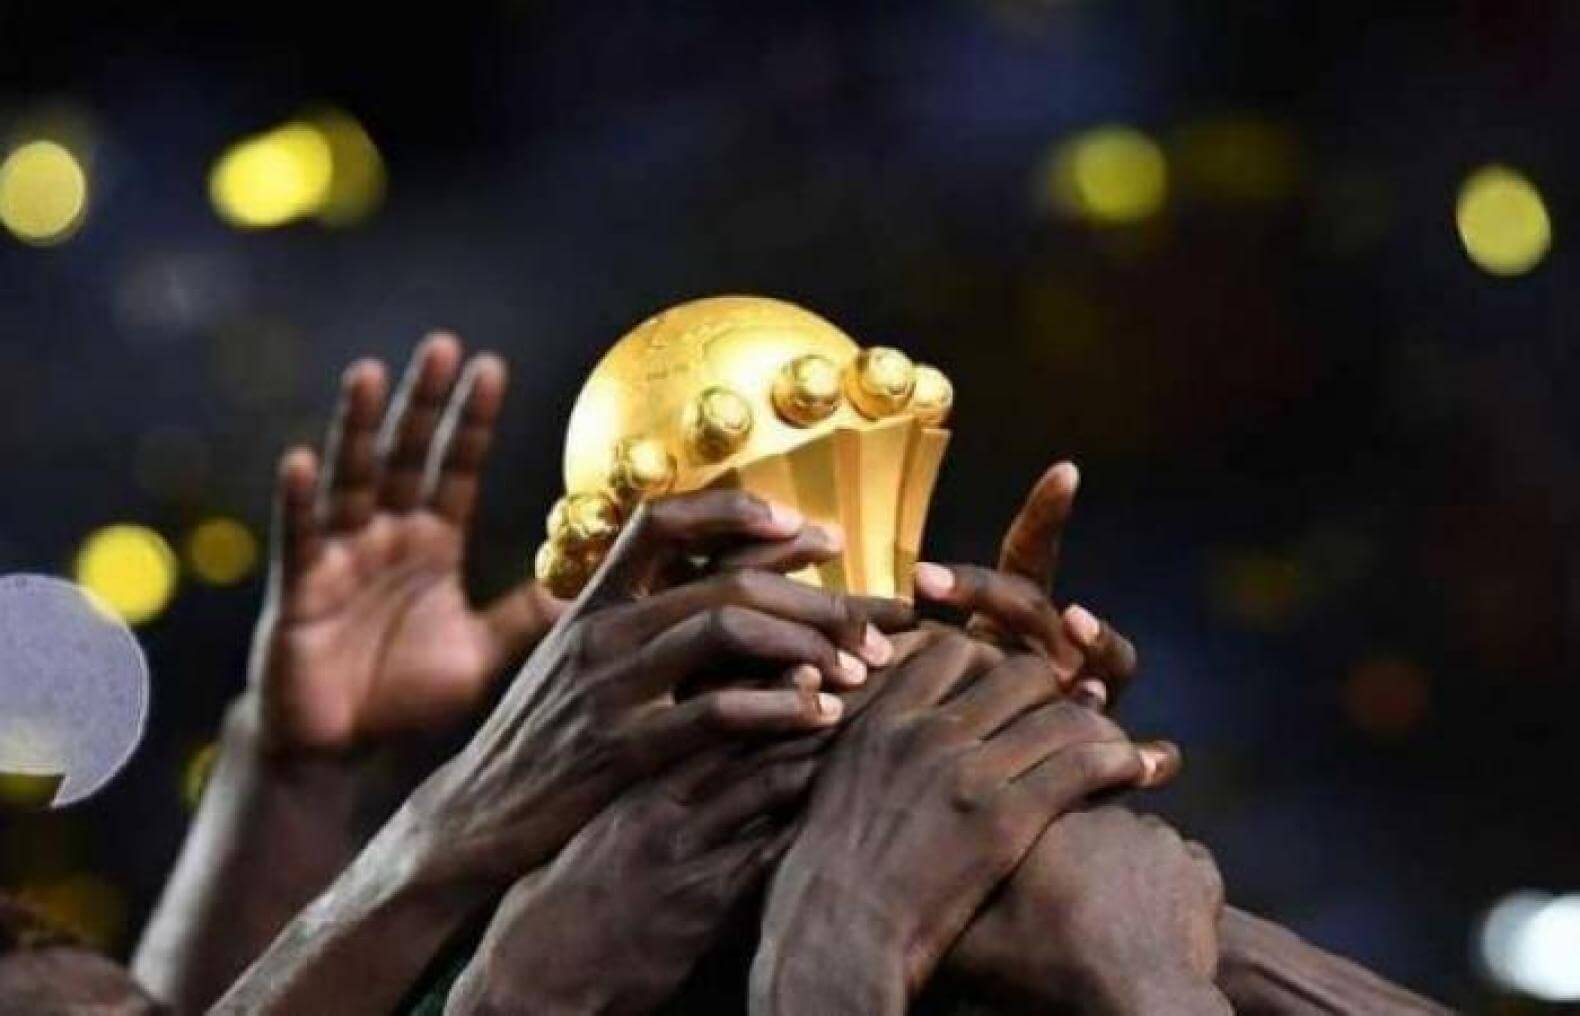 سعر أجهزة البث الرقمي لمشاهدة كأس الأمم الأفريقية